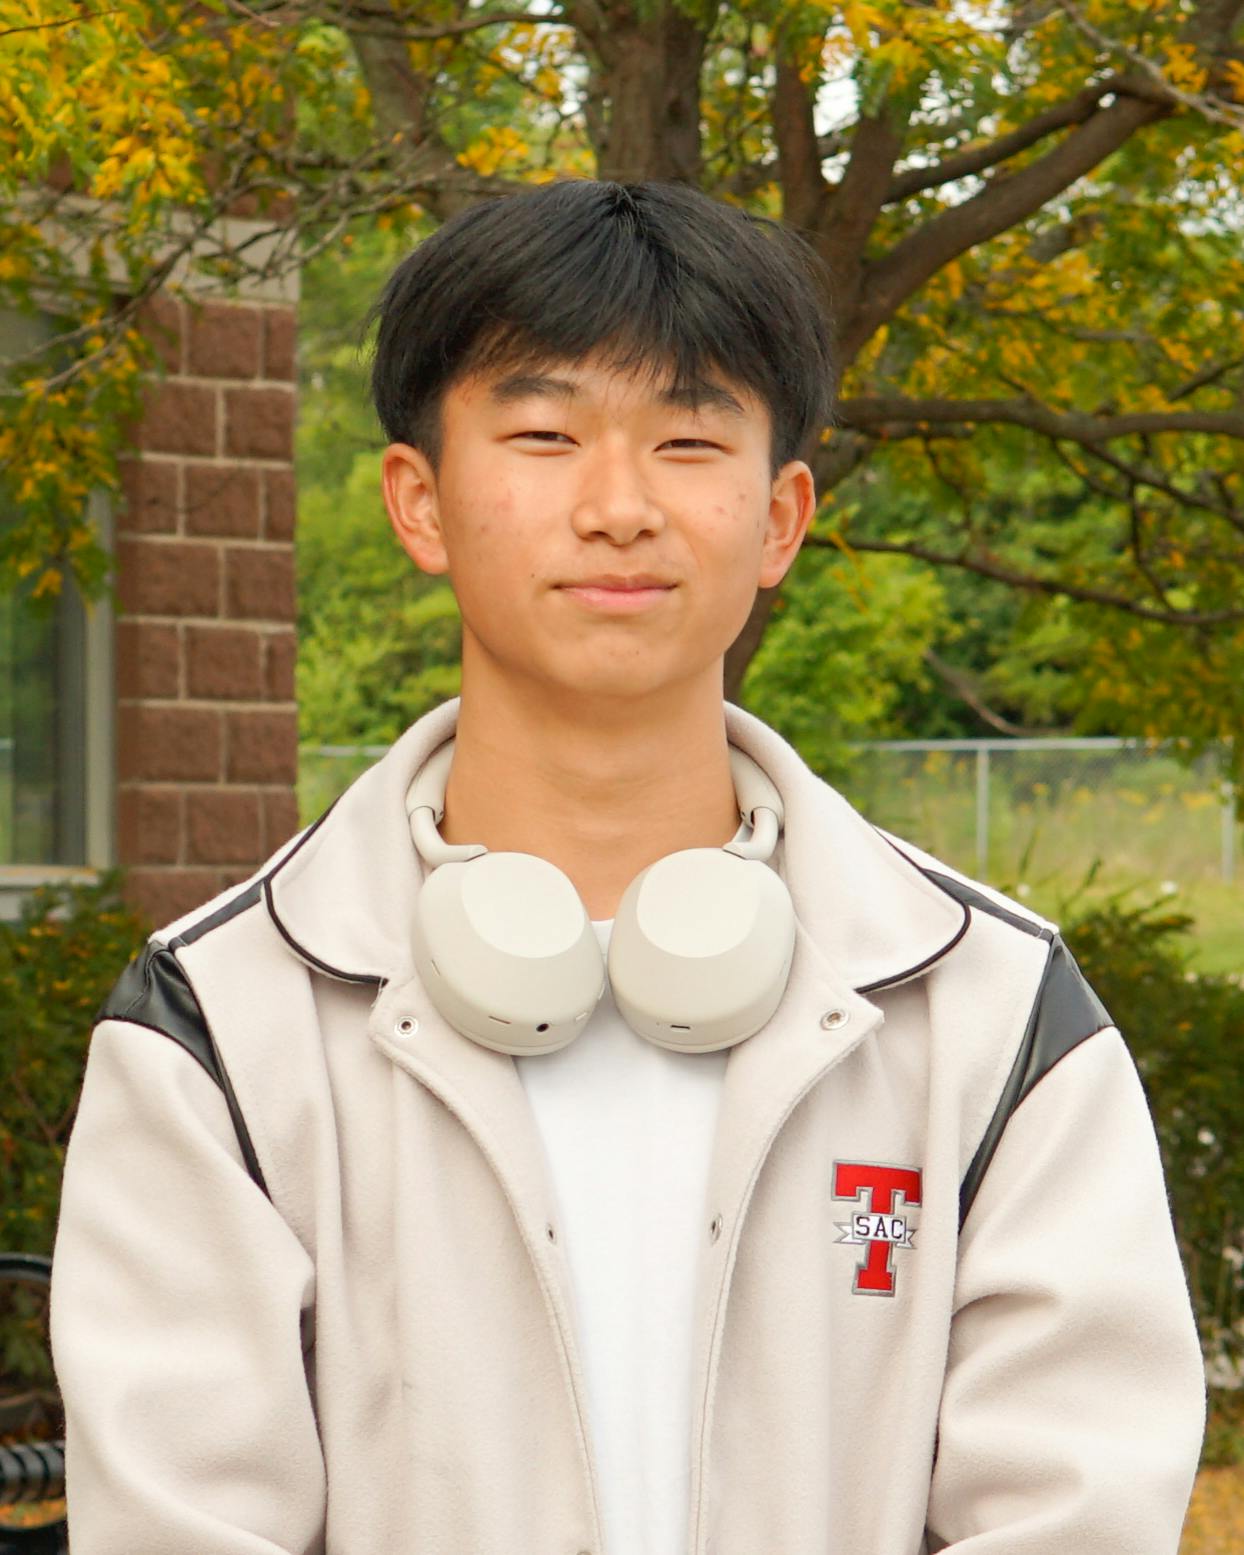 TSAC member Justin Wu